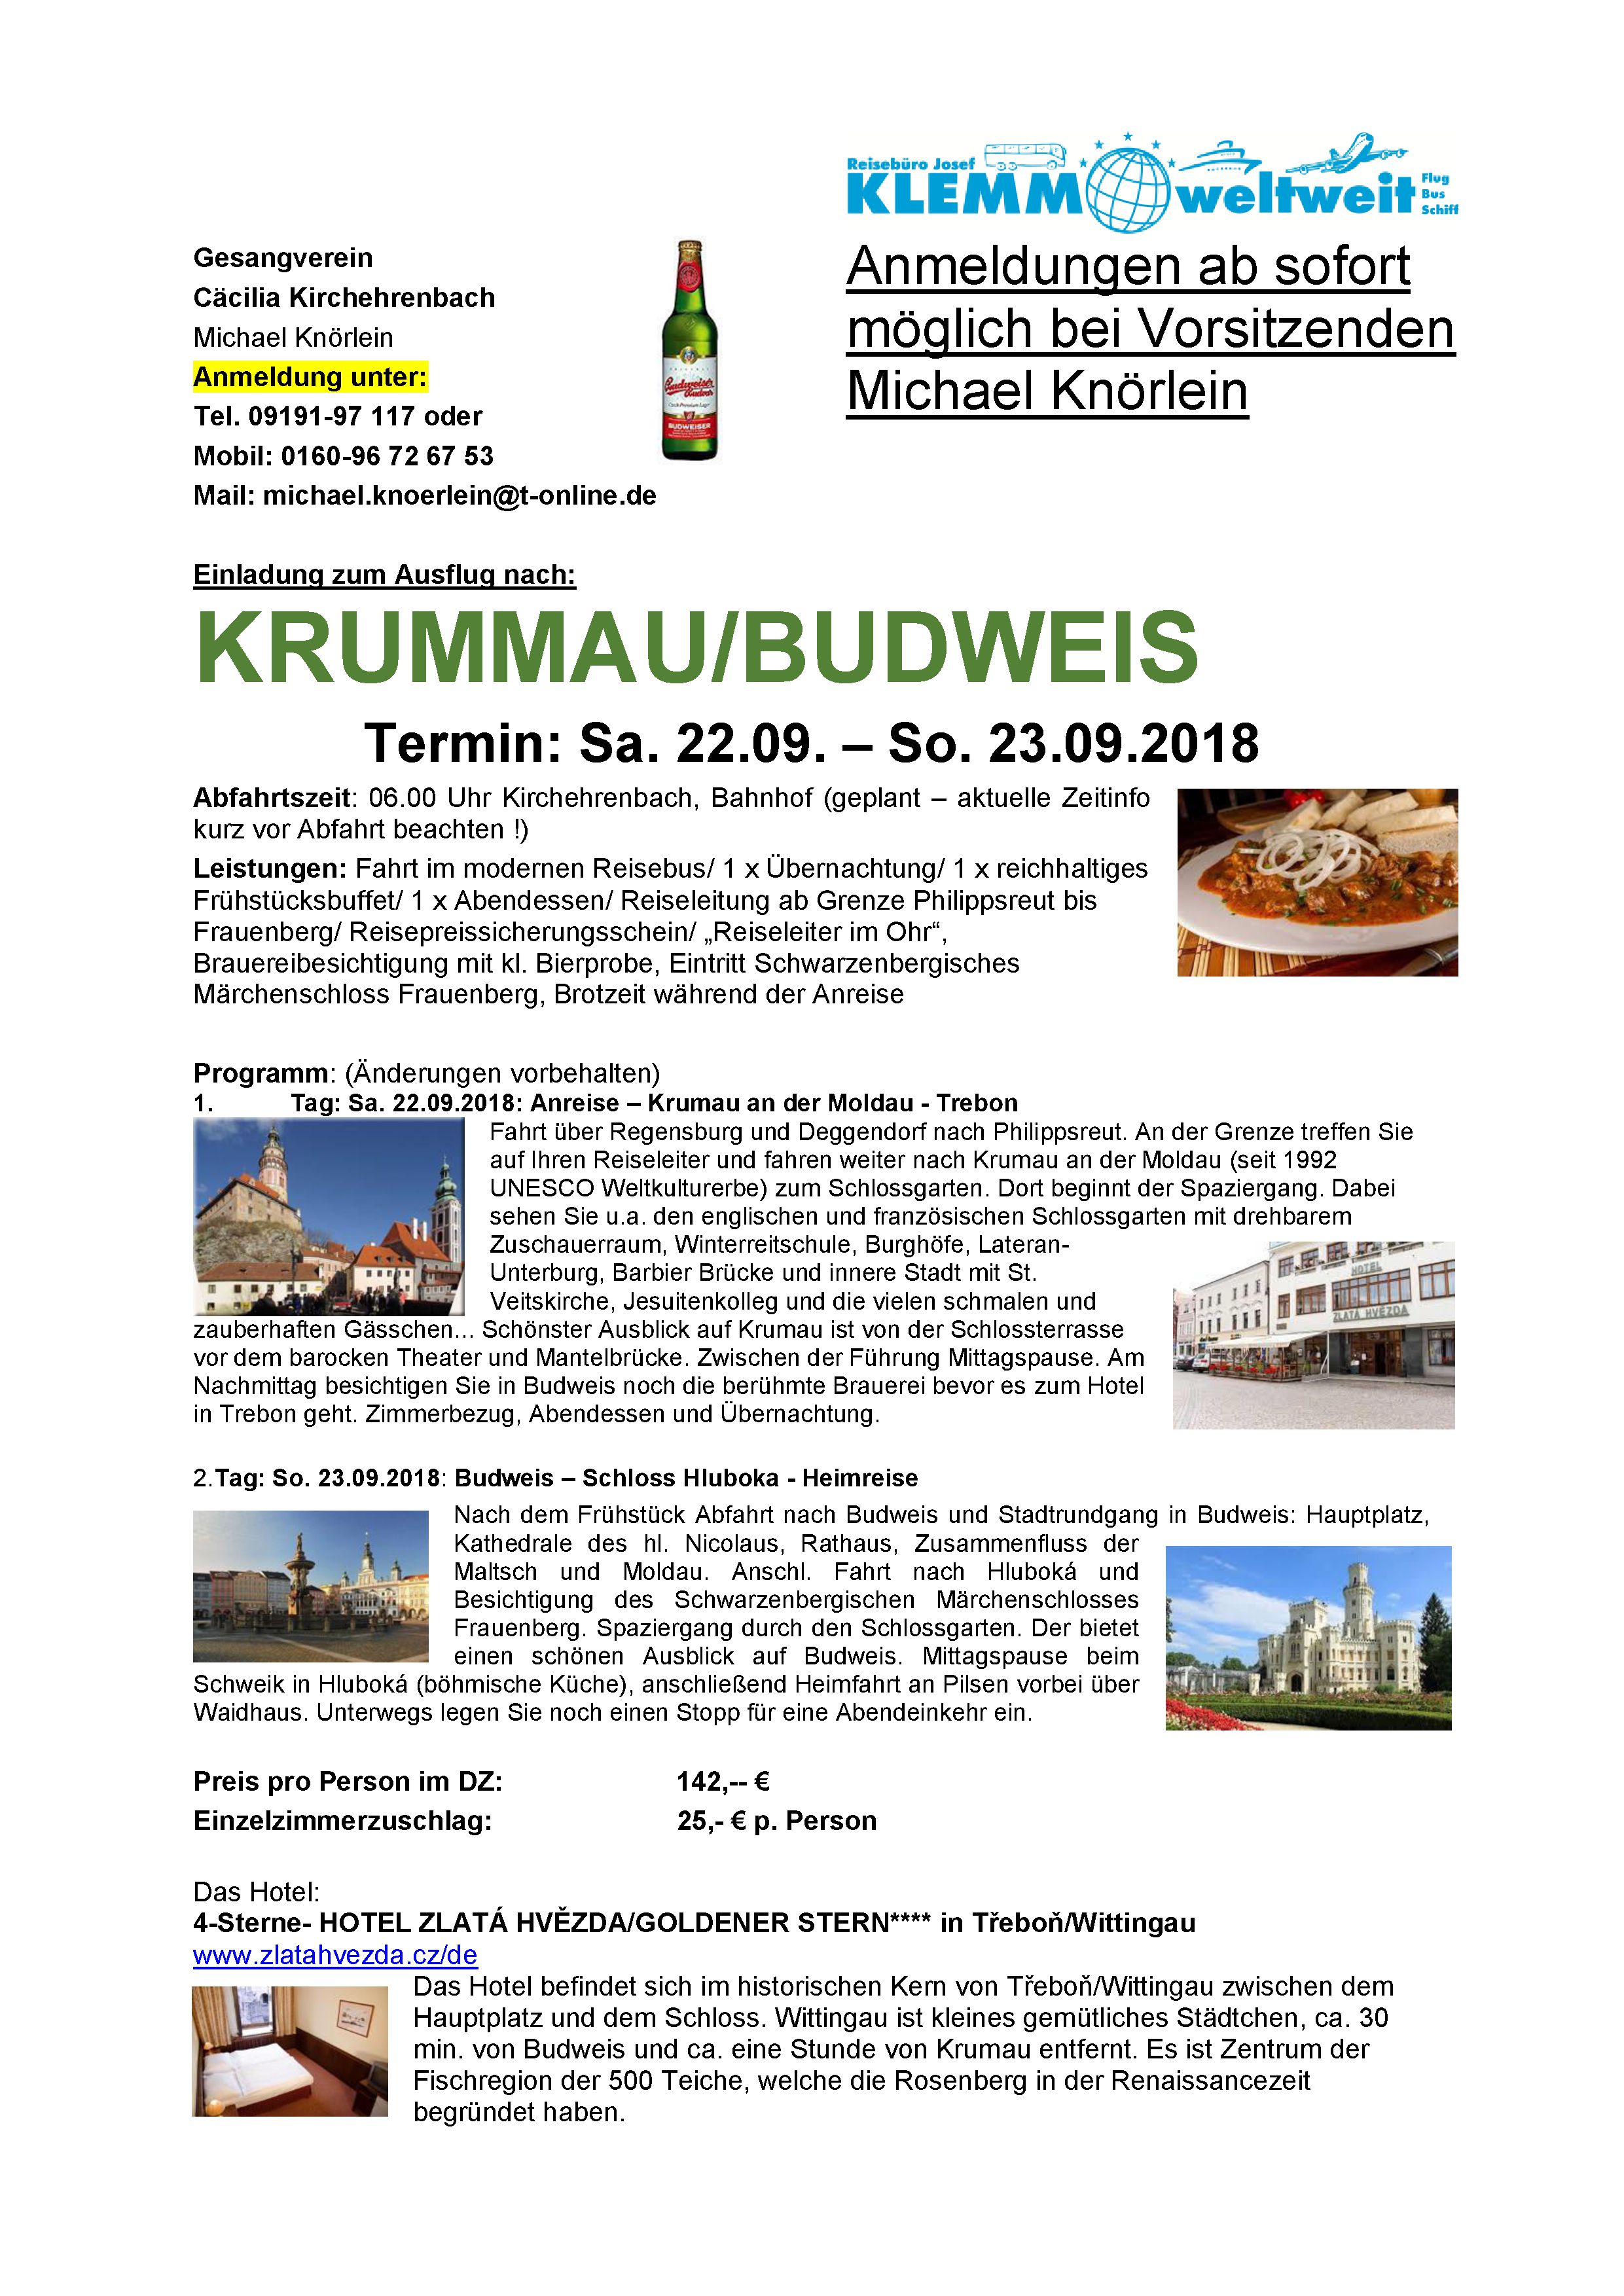 Einladungsschreiben Ausflug Krummau-Budweis